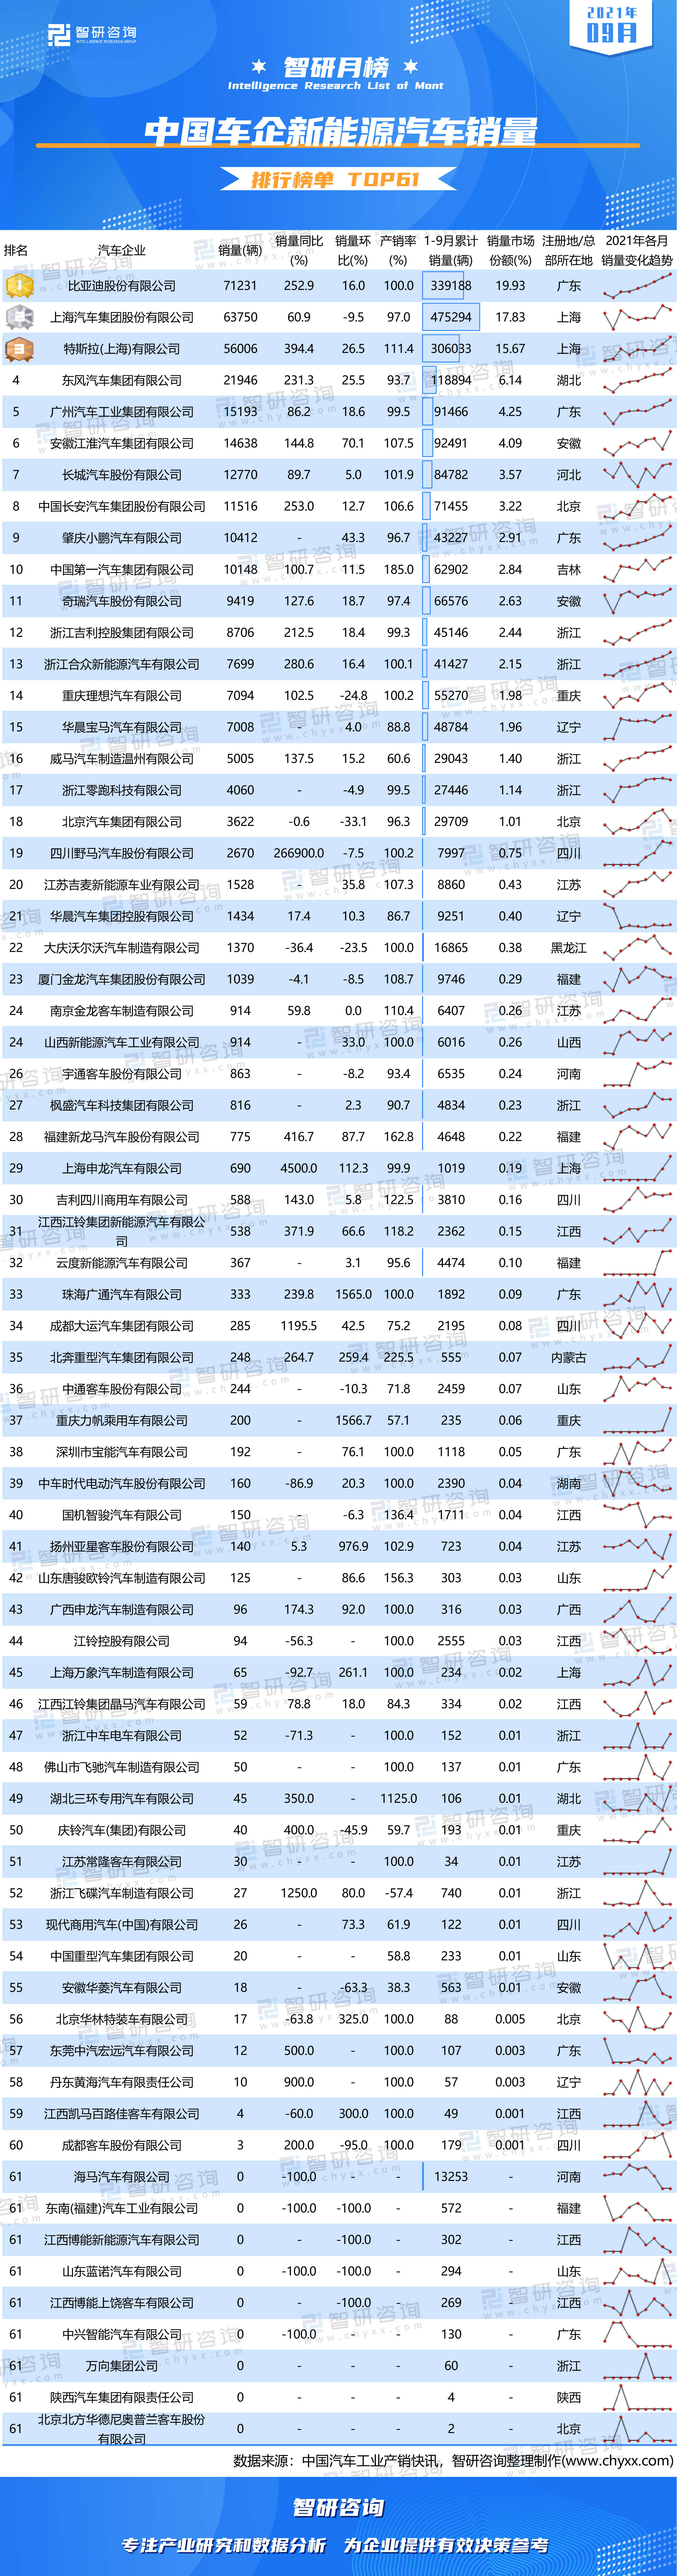 2021中国汽车销量排行榜_2021年10月中大型车销量排行榜